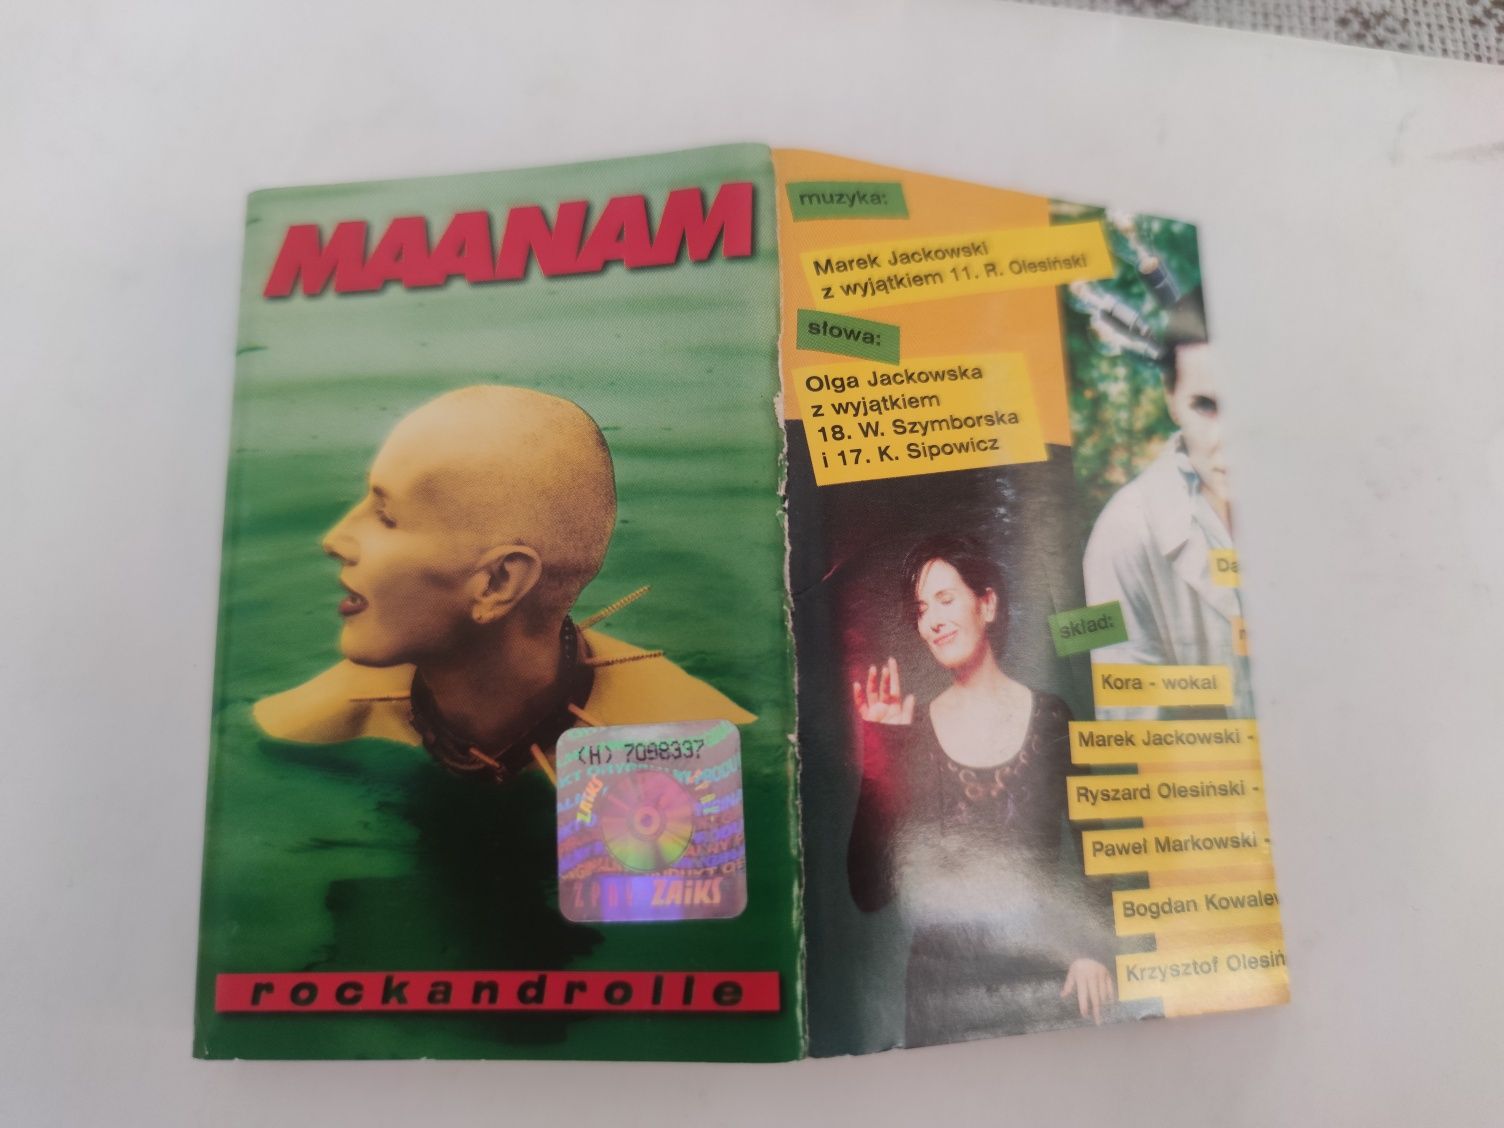 Sprzedam używaną kasetę z utworami zespołu Maanam